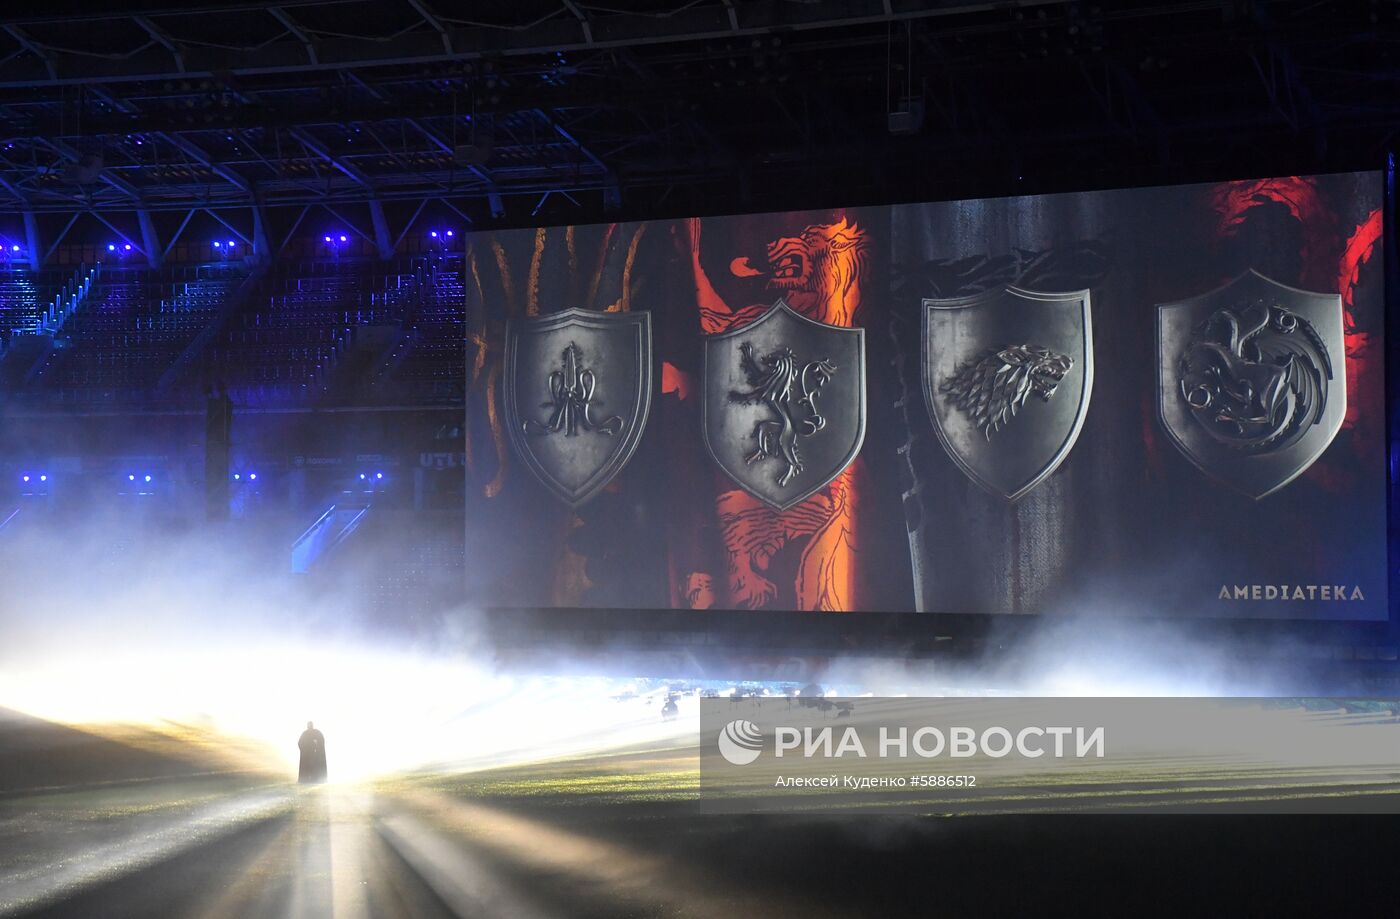 Финальный эпизод сериала "Игра престолов" на стадионе "РЖД Арена"